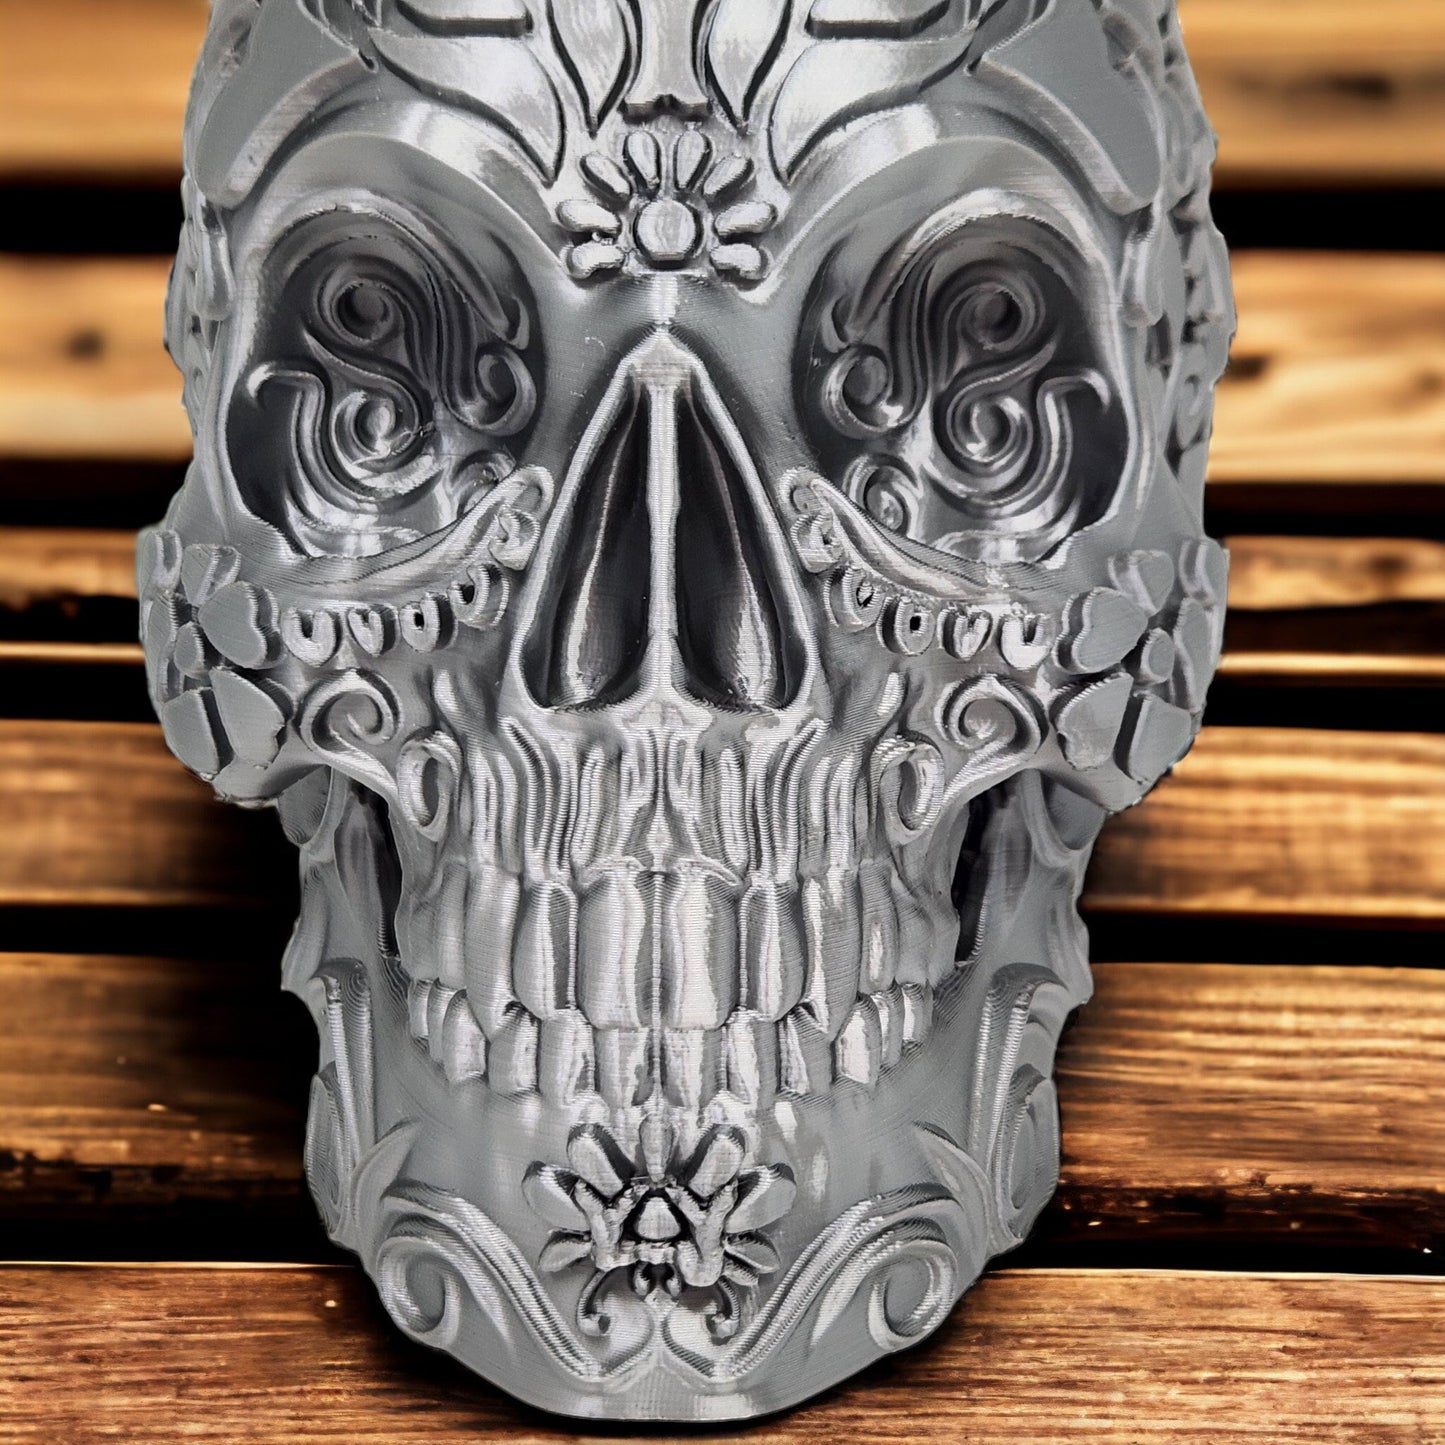 3D Printed Planter Skull Calavera Sugar - Unique Day of the Dead Decor